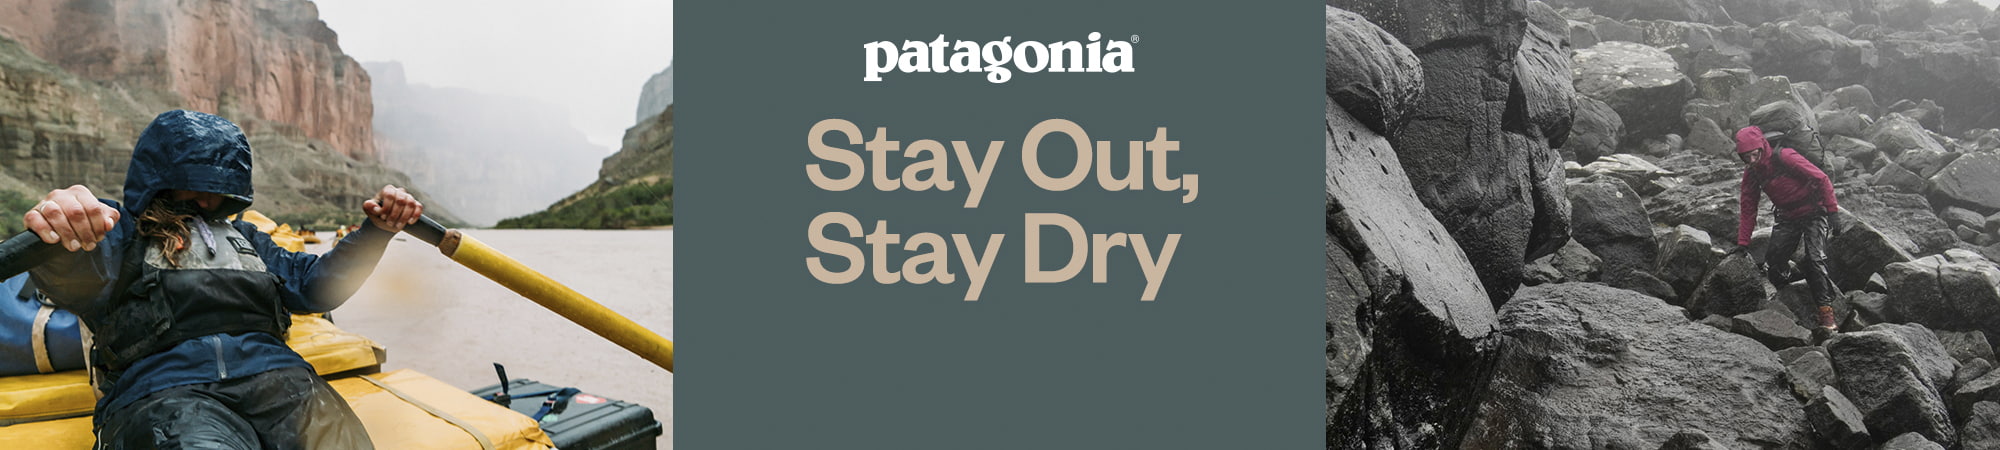 Patagonia rainwear